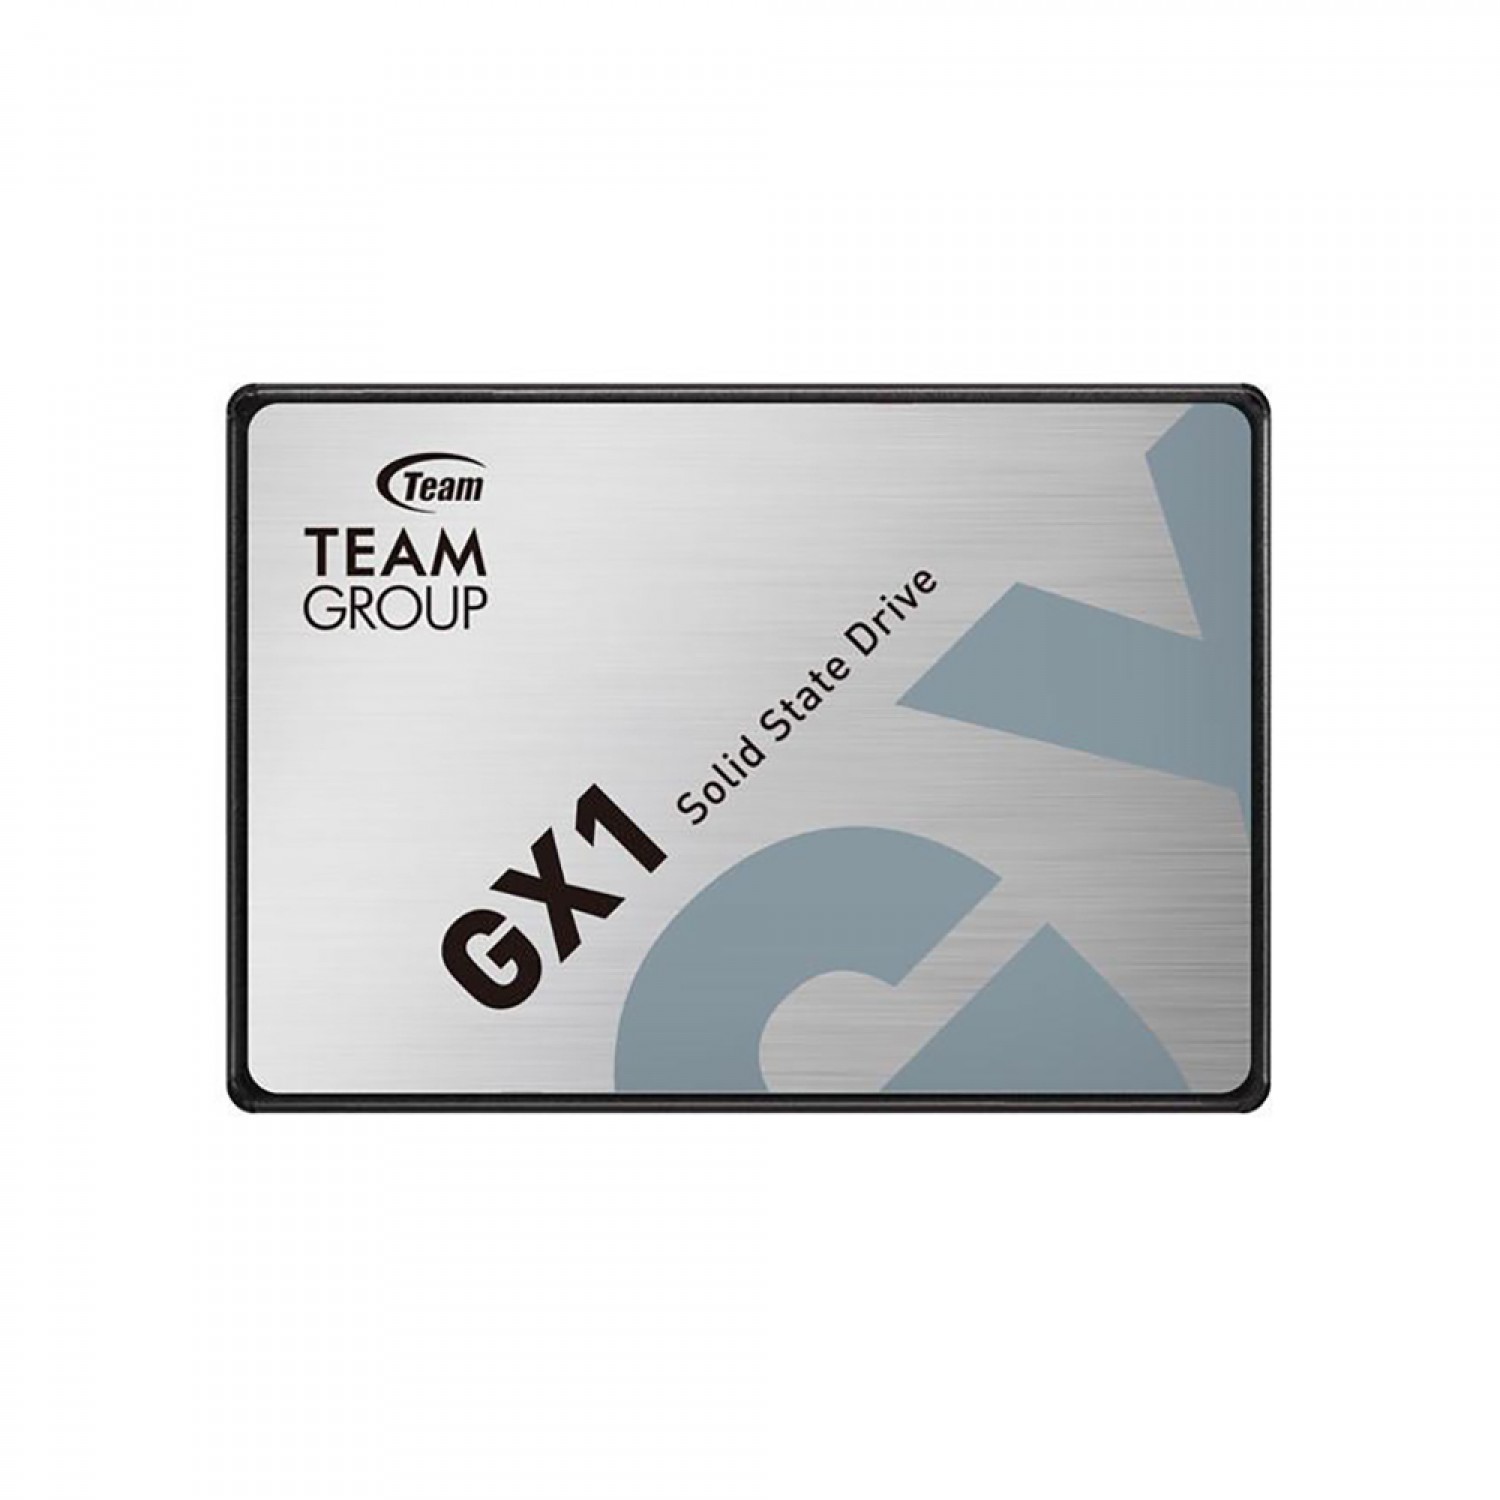 حافظه اس اس دی TeamGroup GX1 480GB